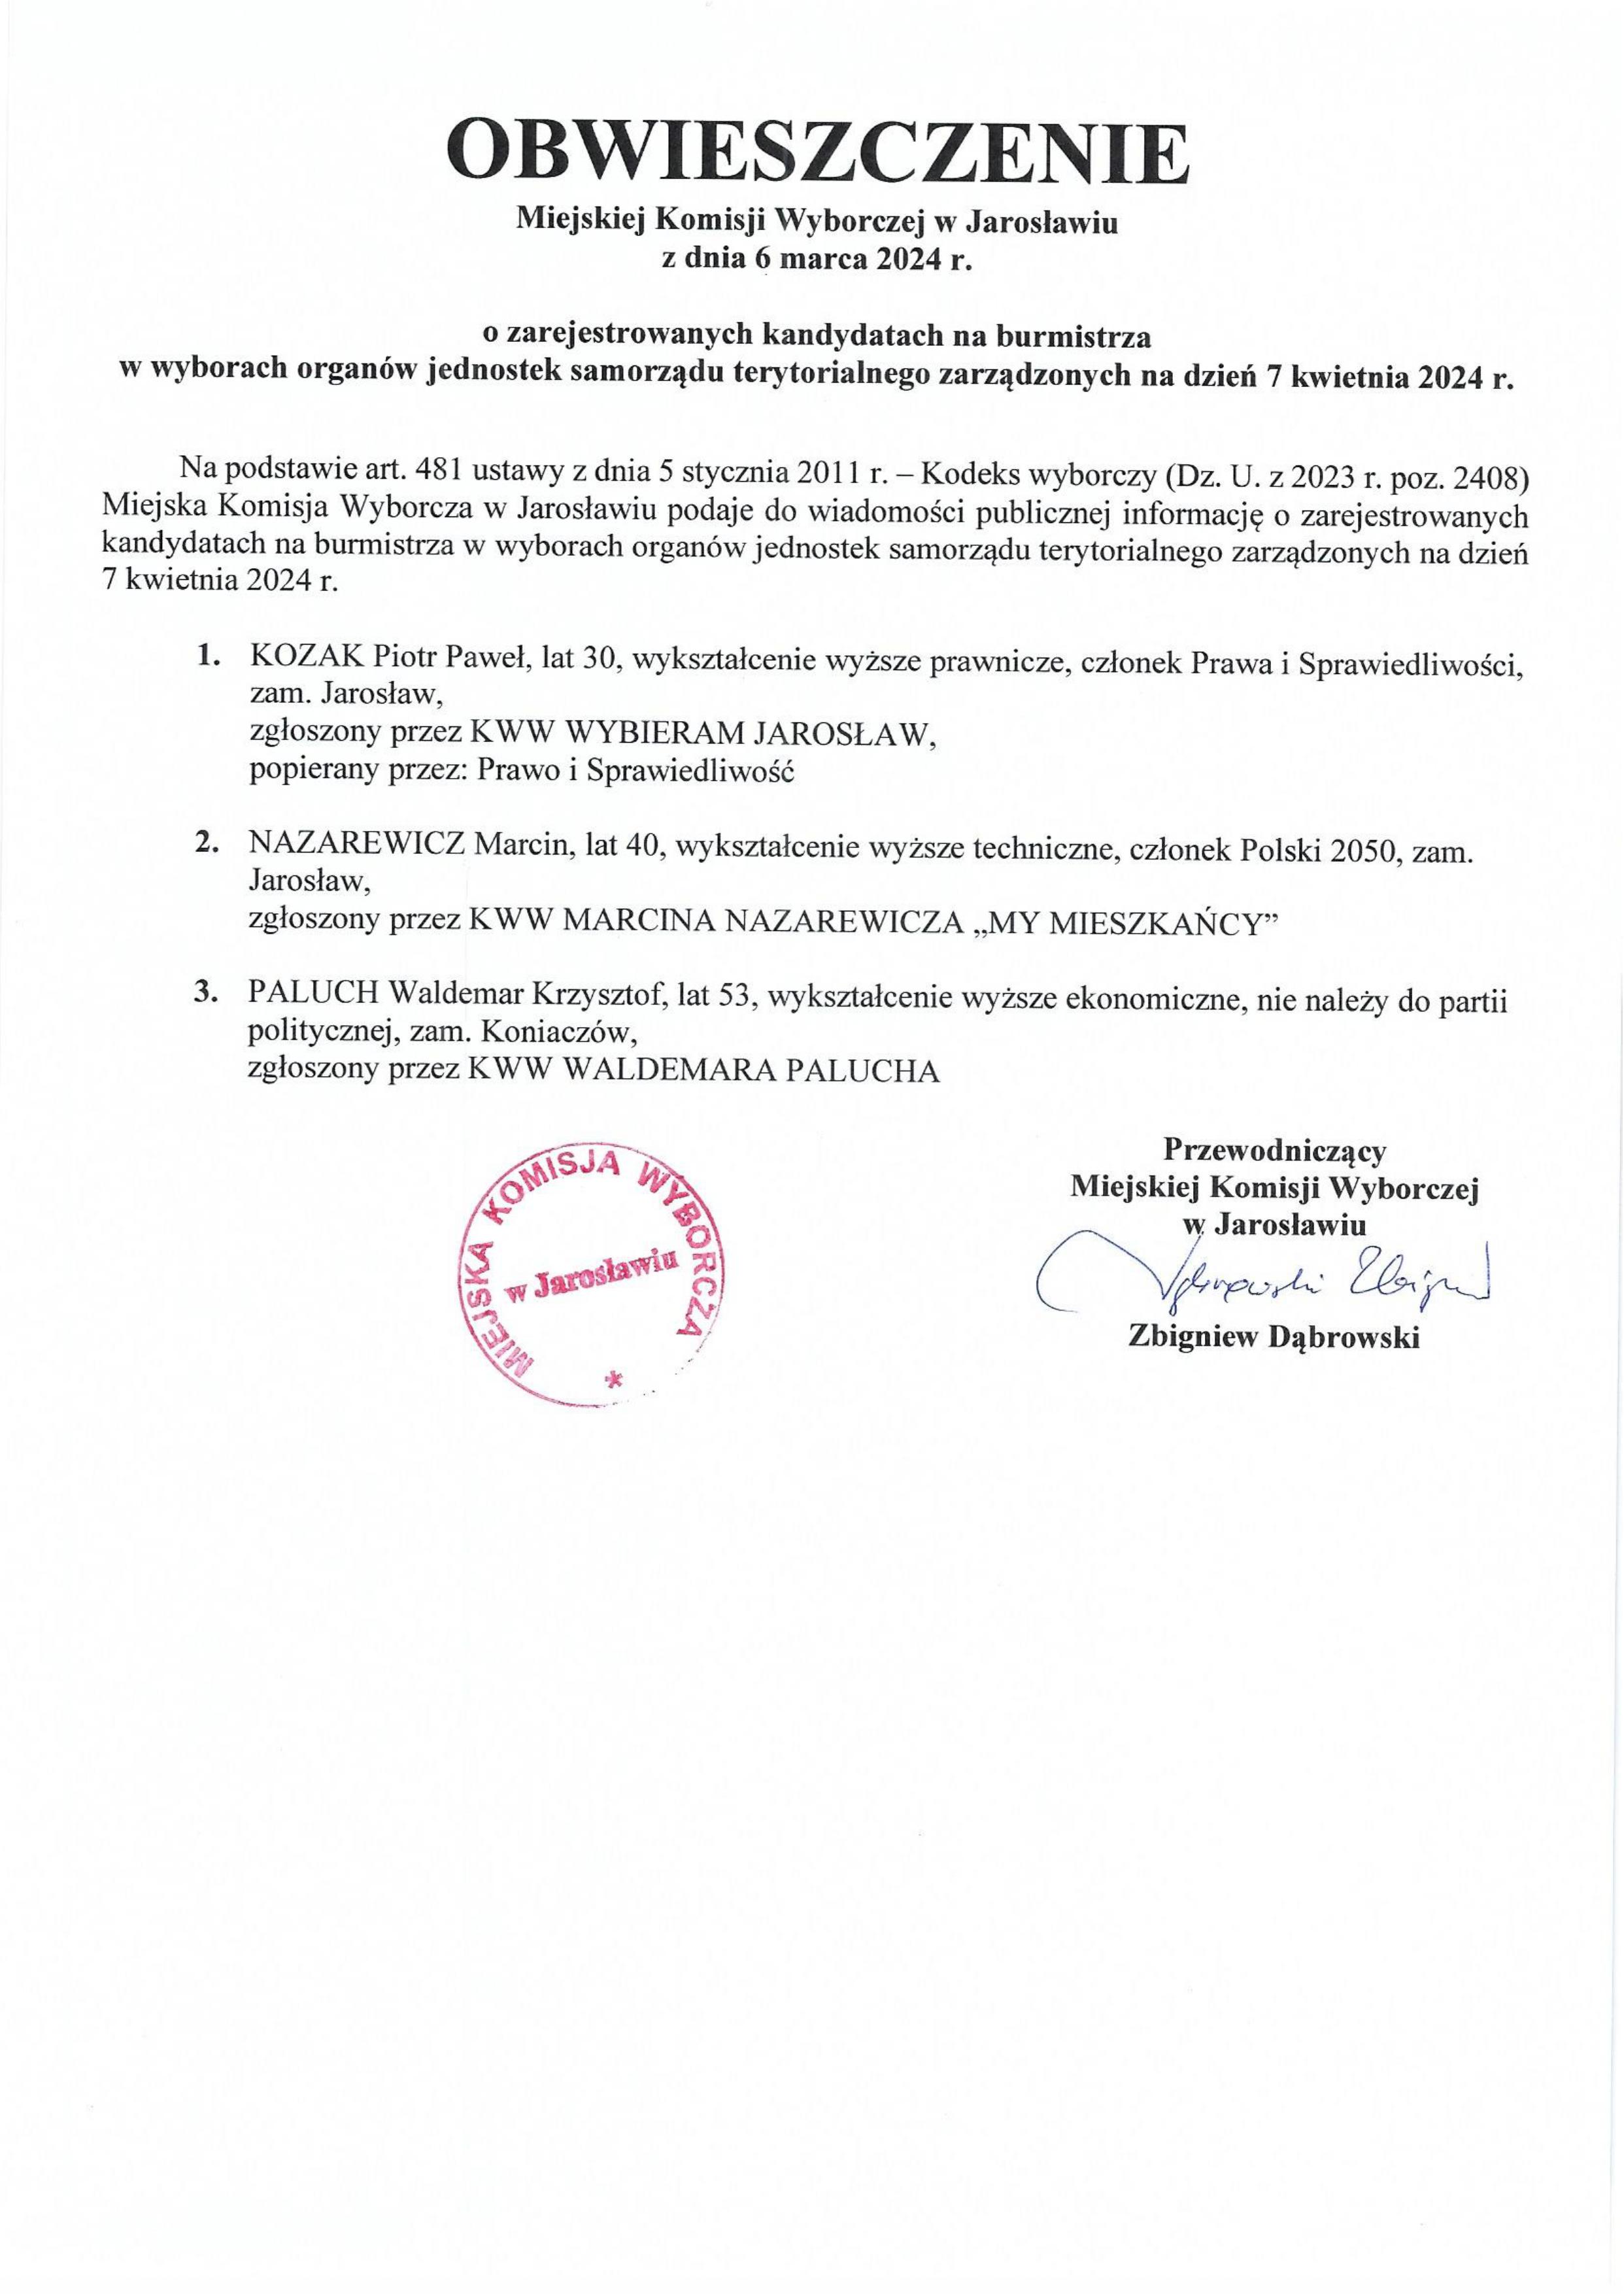 Obwieszczenie Miejskiej Komisji Wyborczej w Jarosławiu z dnia 6 marca 2024 roku o zarejestrowanych kandydatach na burmistrza w wyborach organów jednostek samorządu terytorialnego zarządzonych na dzień 7 kwietnia 2024 roku